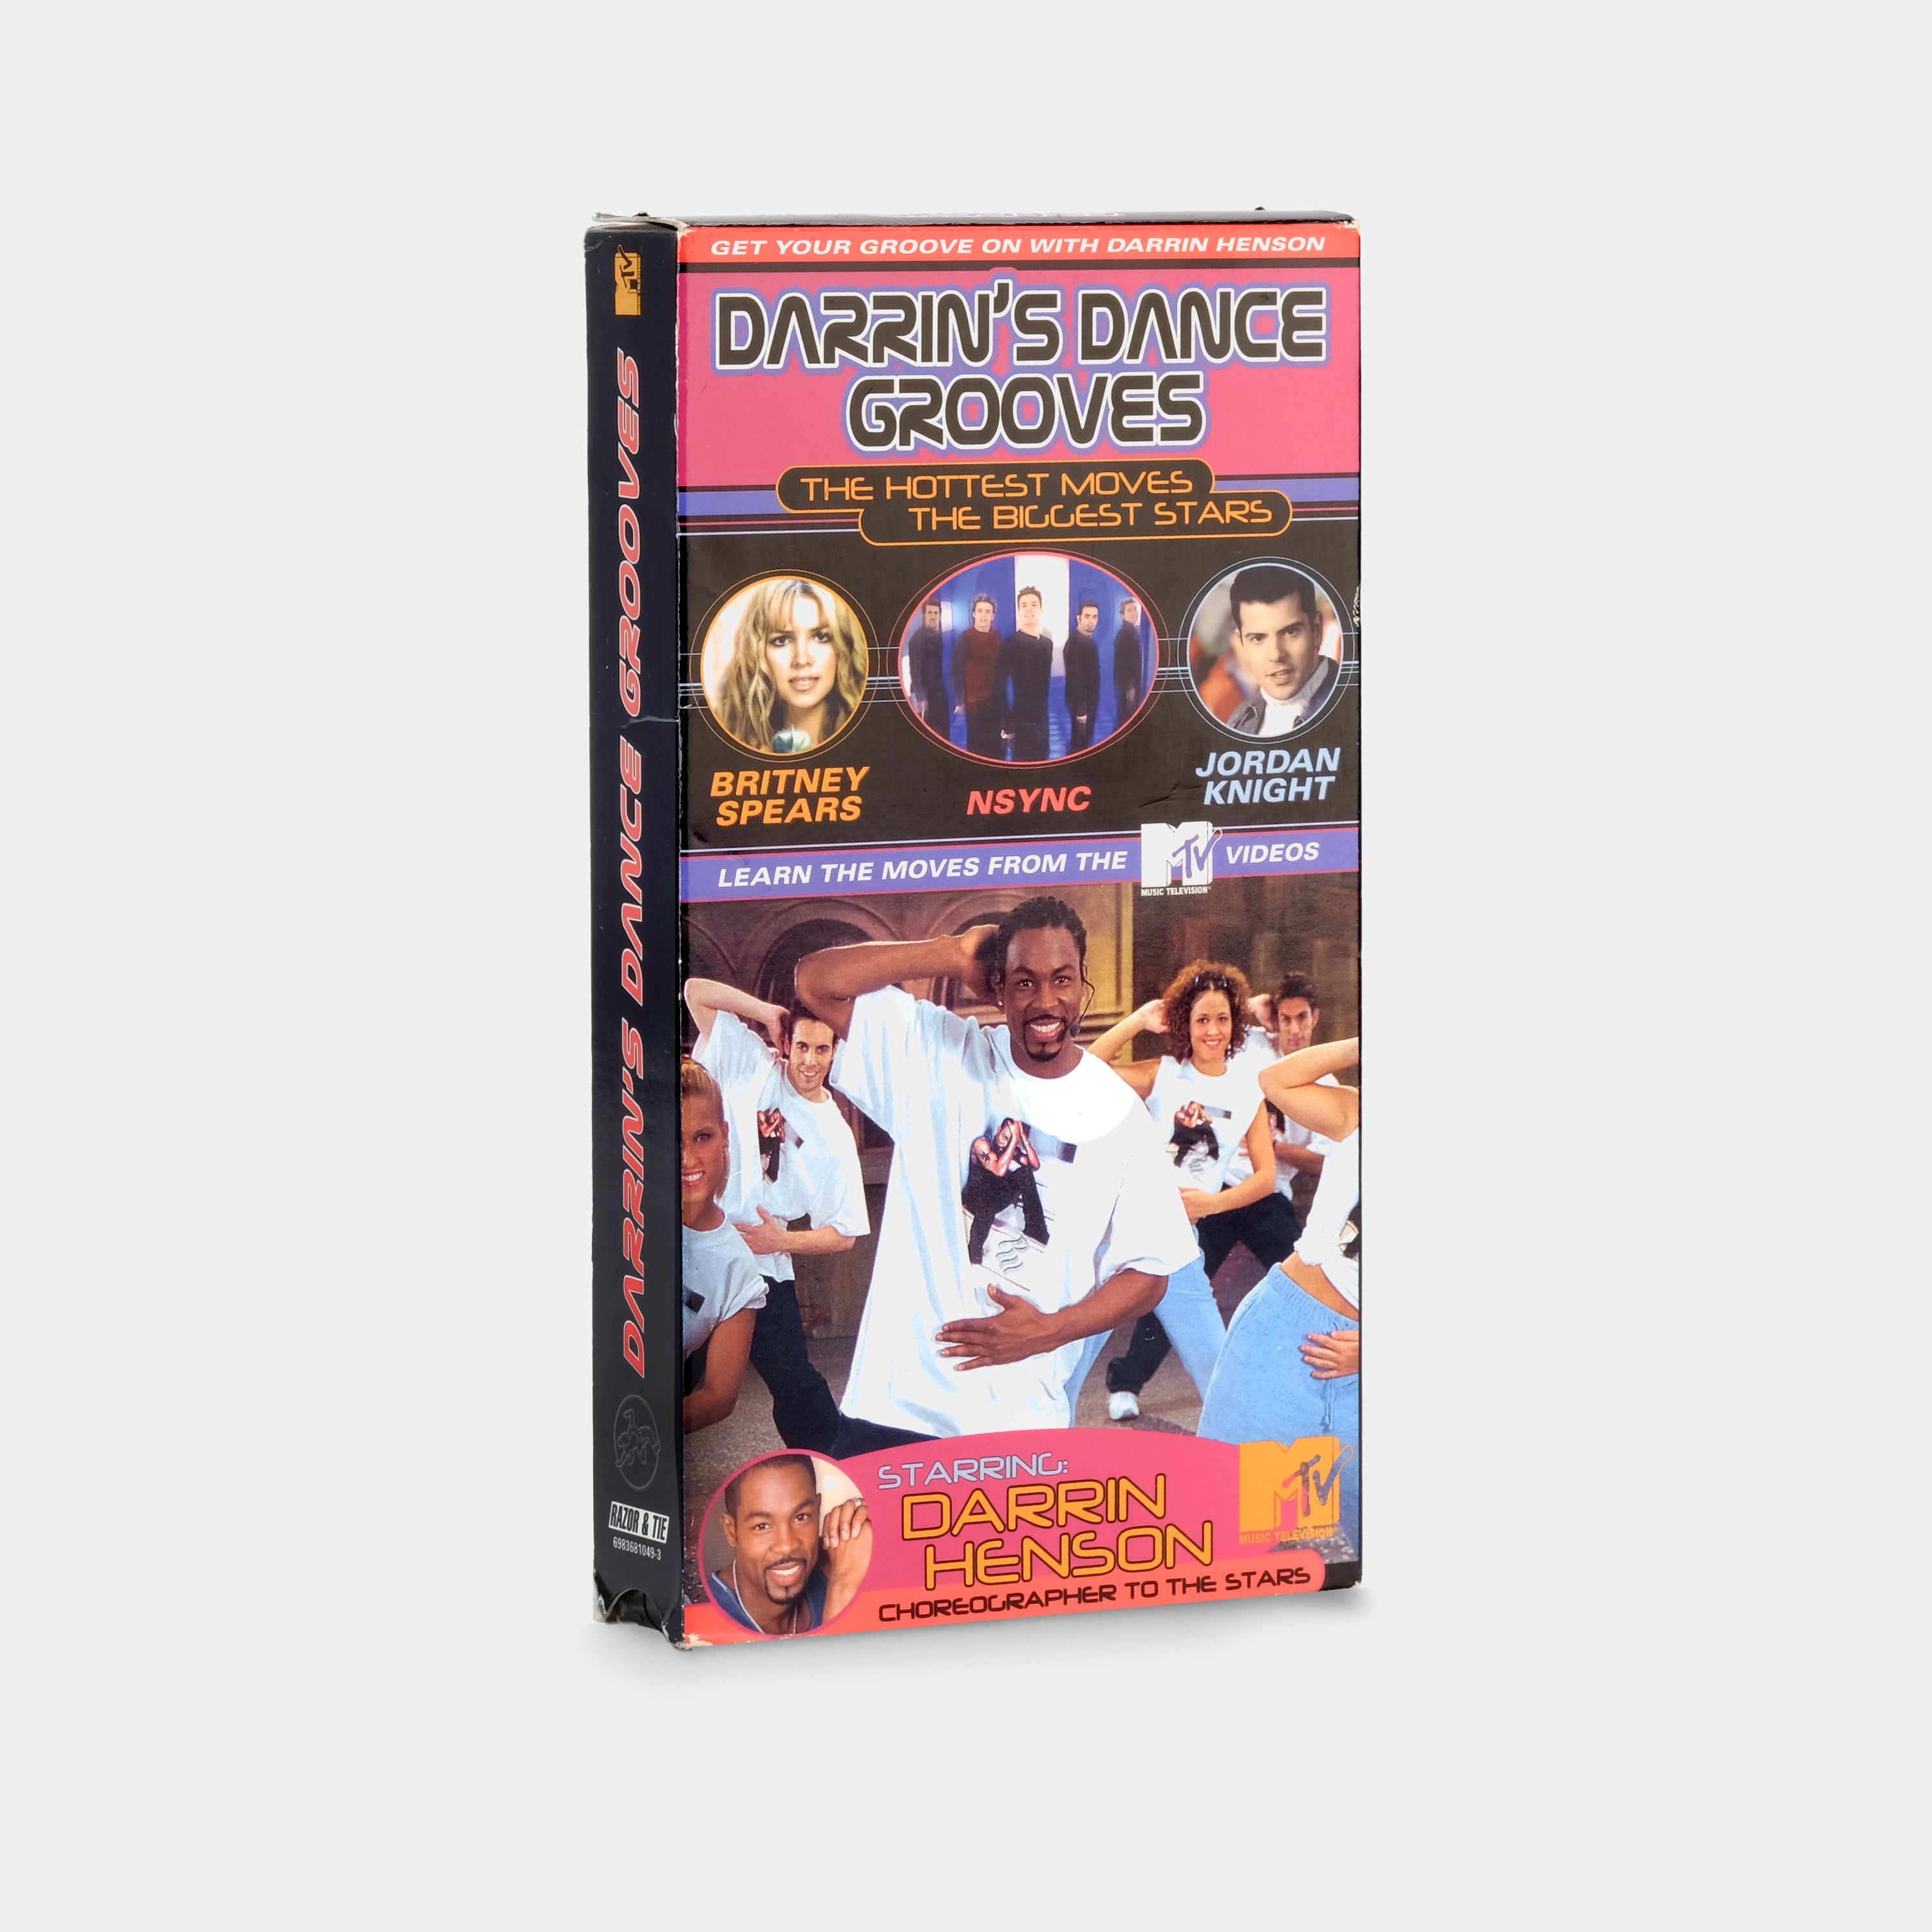 Darrin's Dance Grooves VHS Tape